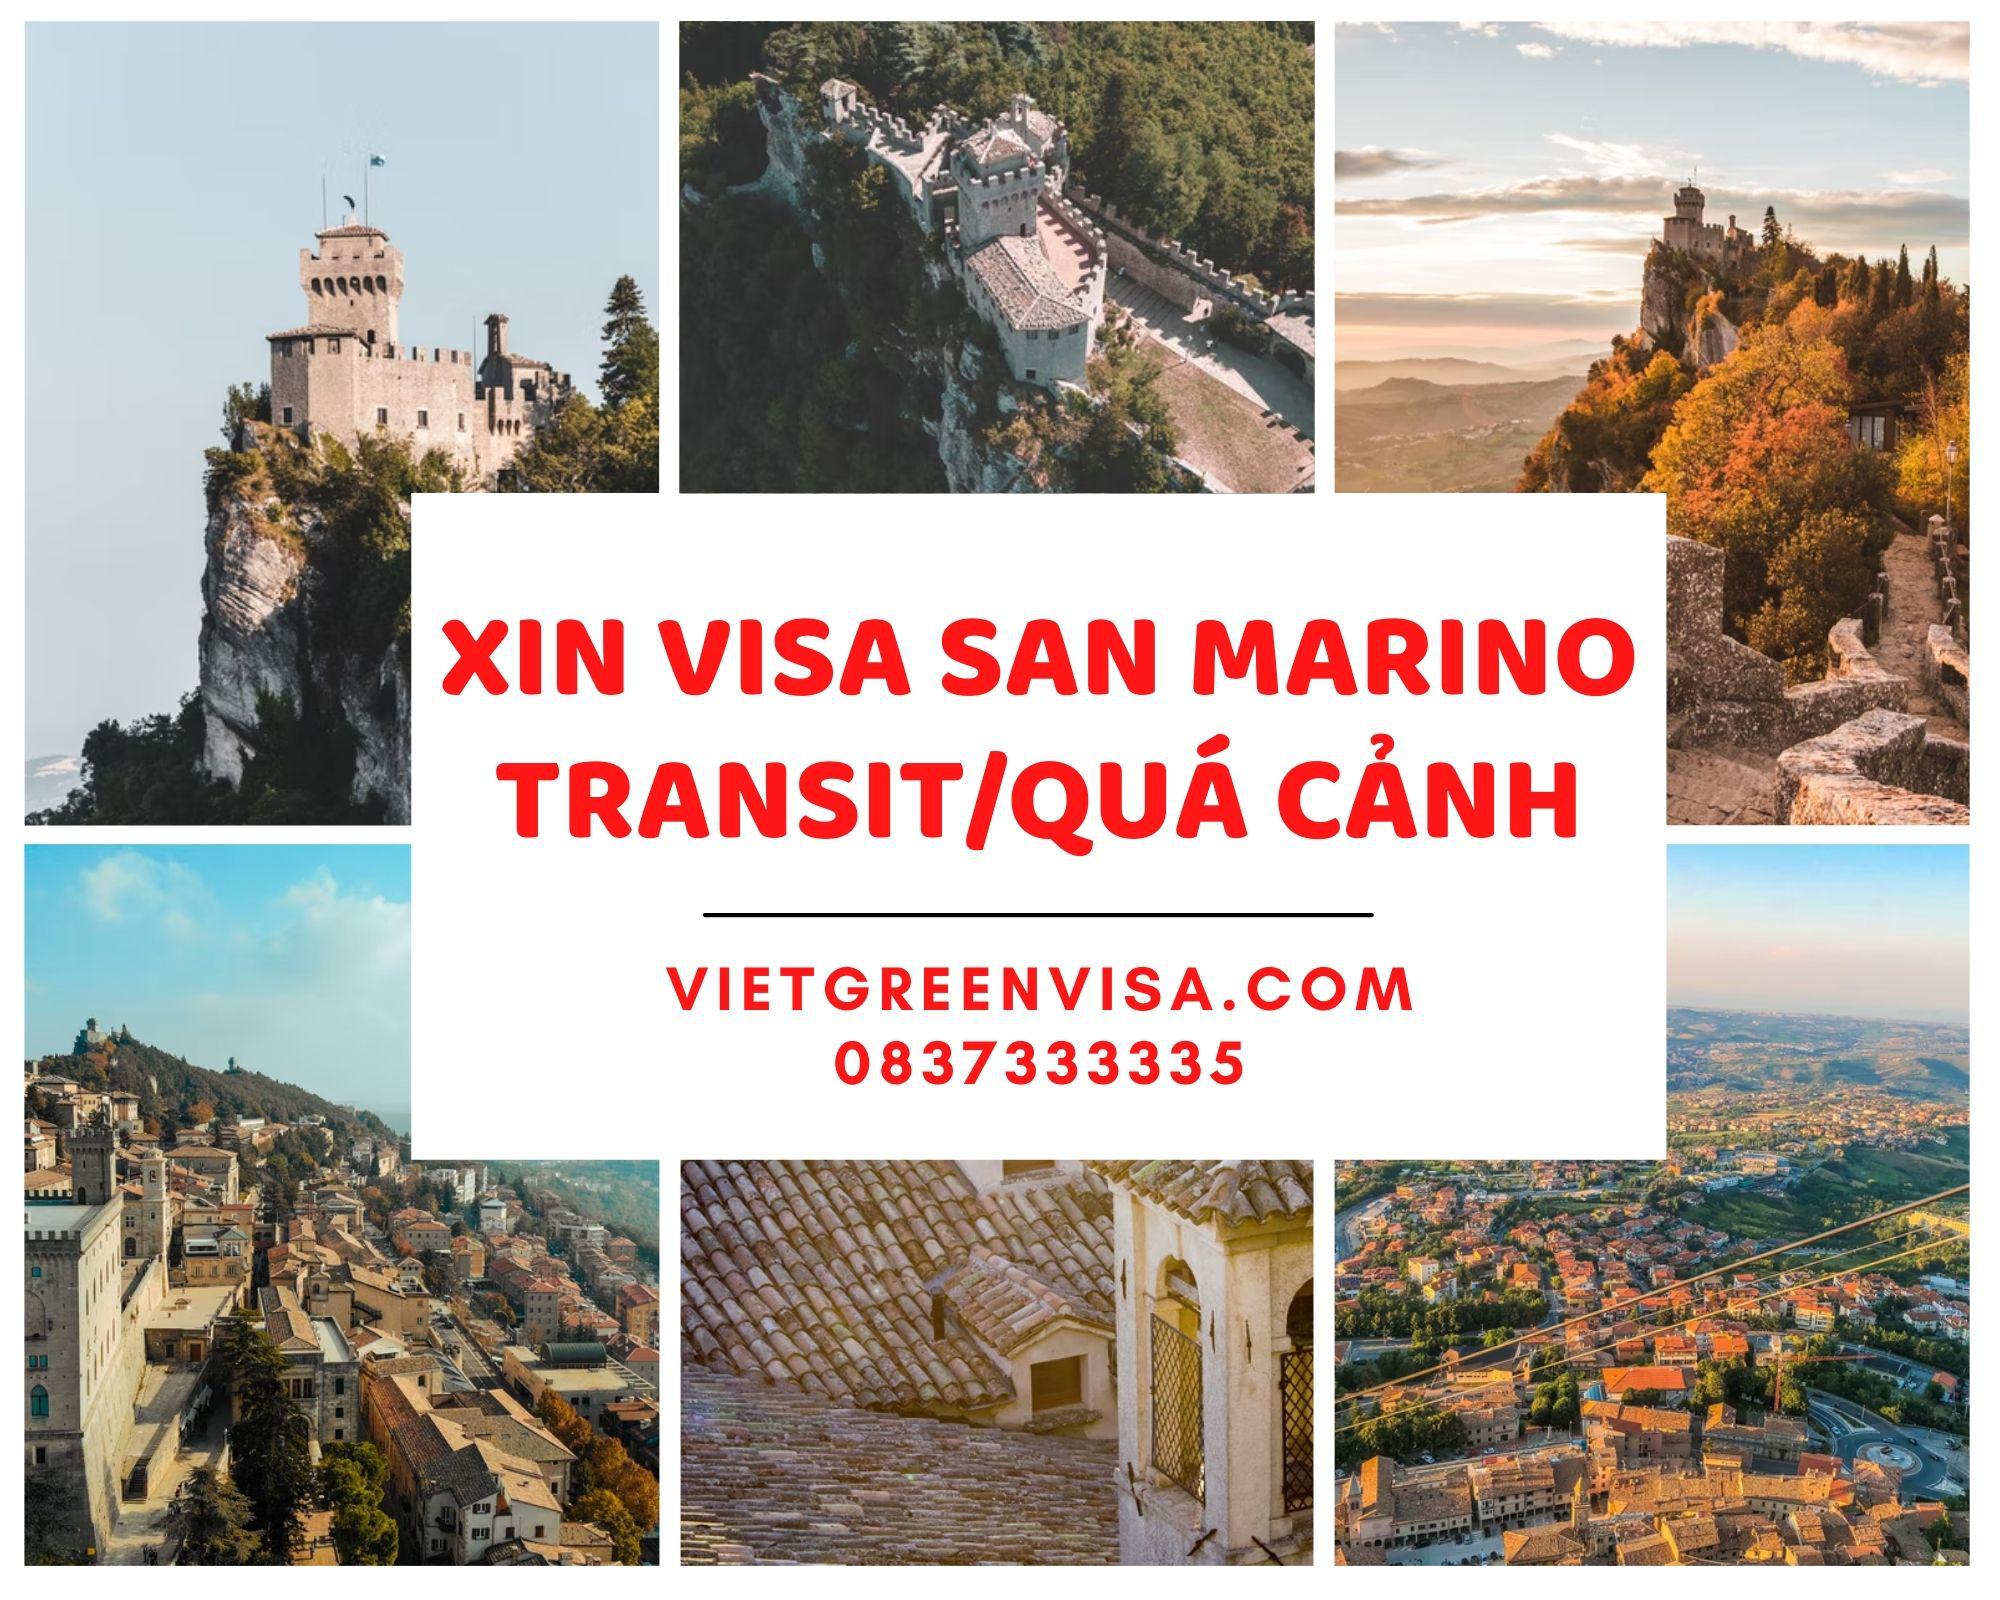 Dịch vụ visa quá cảnh qua San Marino, visa San Marino transit 